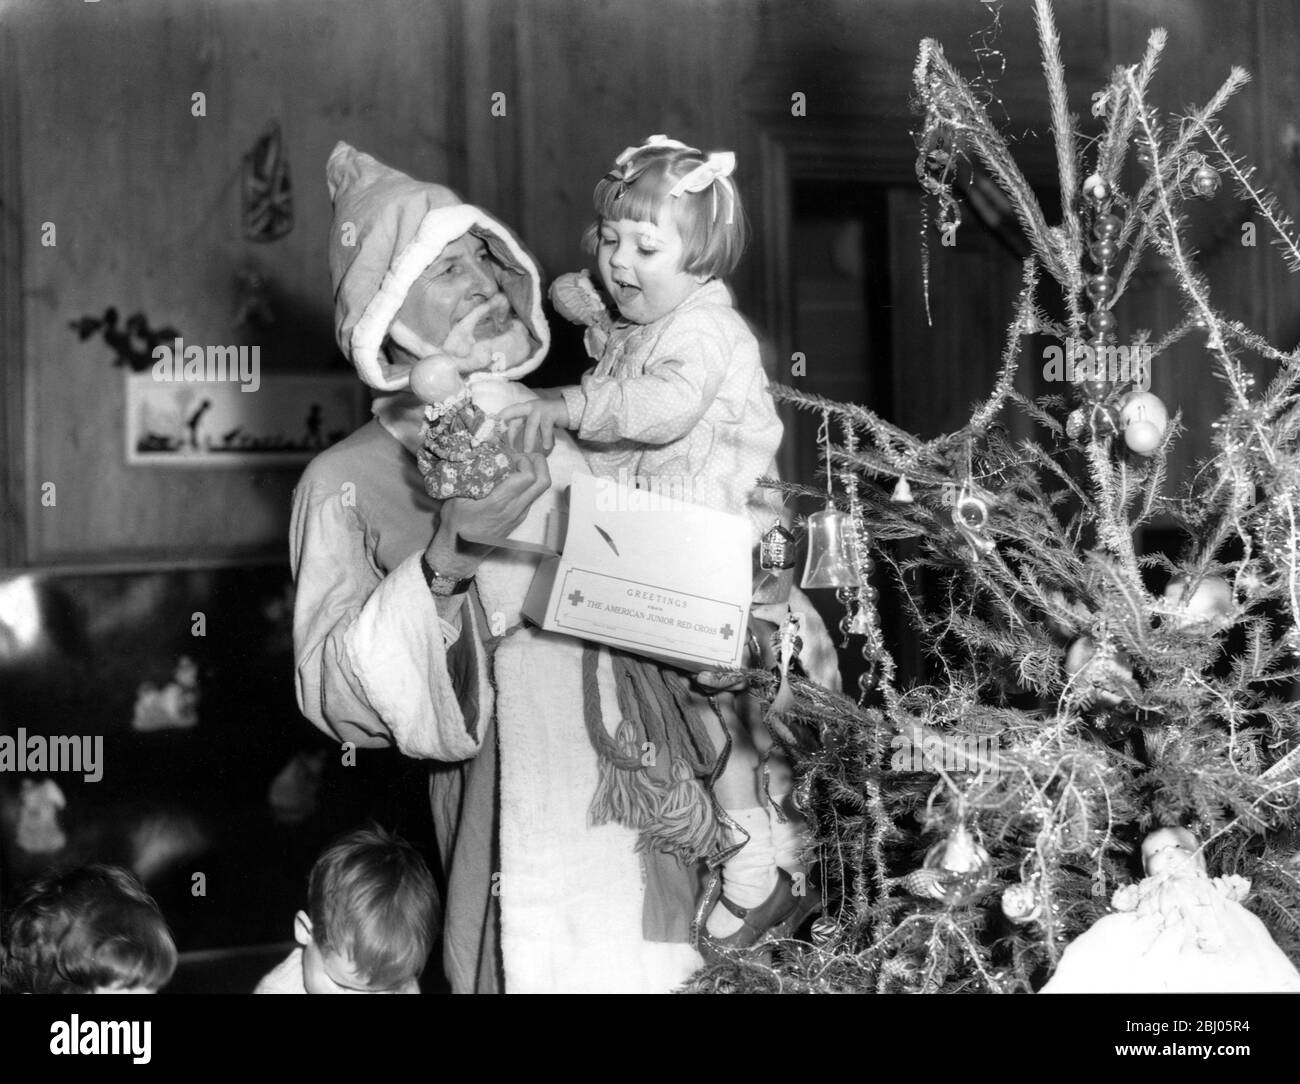 Weihnachtsjubel aus Amerika für bombardierte und evakuierte Londoner Kinder. Kinder im WVS Nursery in der Hanover Lodge, Regent's Park, die darauf warten, in Kindergärten im Land evakuiert zu werden, erhielten ihre Weihnachtsgeschenke auf einer Party, auf der Bernard Carter, der Delegierte des amerikanischen Roten Kreuzes in Großbritannien, als Weihnachtsmann fungierte. Bernard Carter mit einem glücklichen kleinen Mädchen, nachdem sie ihr Geschenk erhalten hatte. - 20. Dezember 1941 Stockfoto